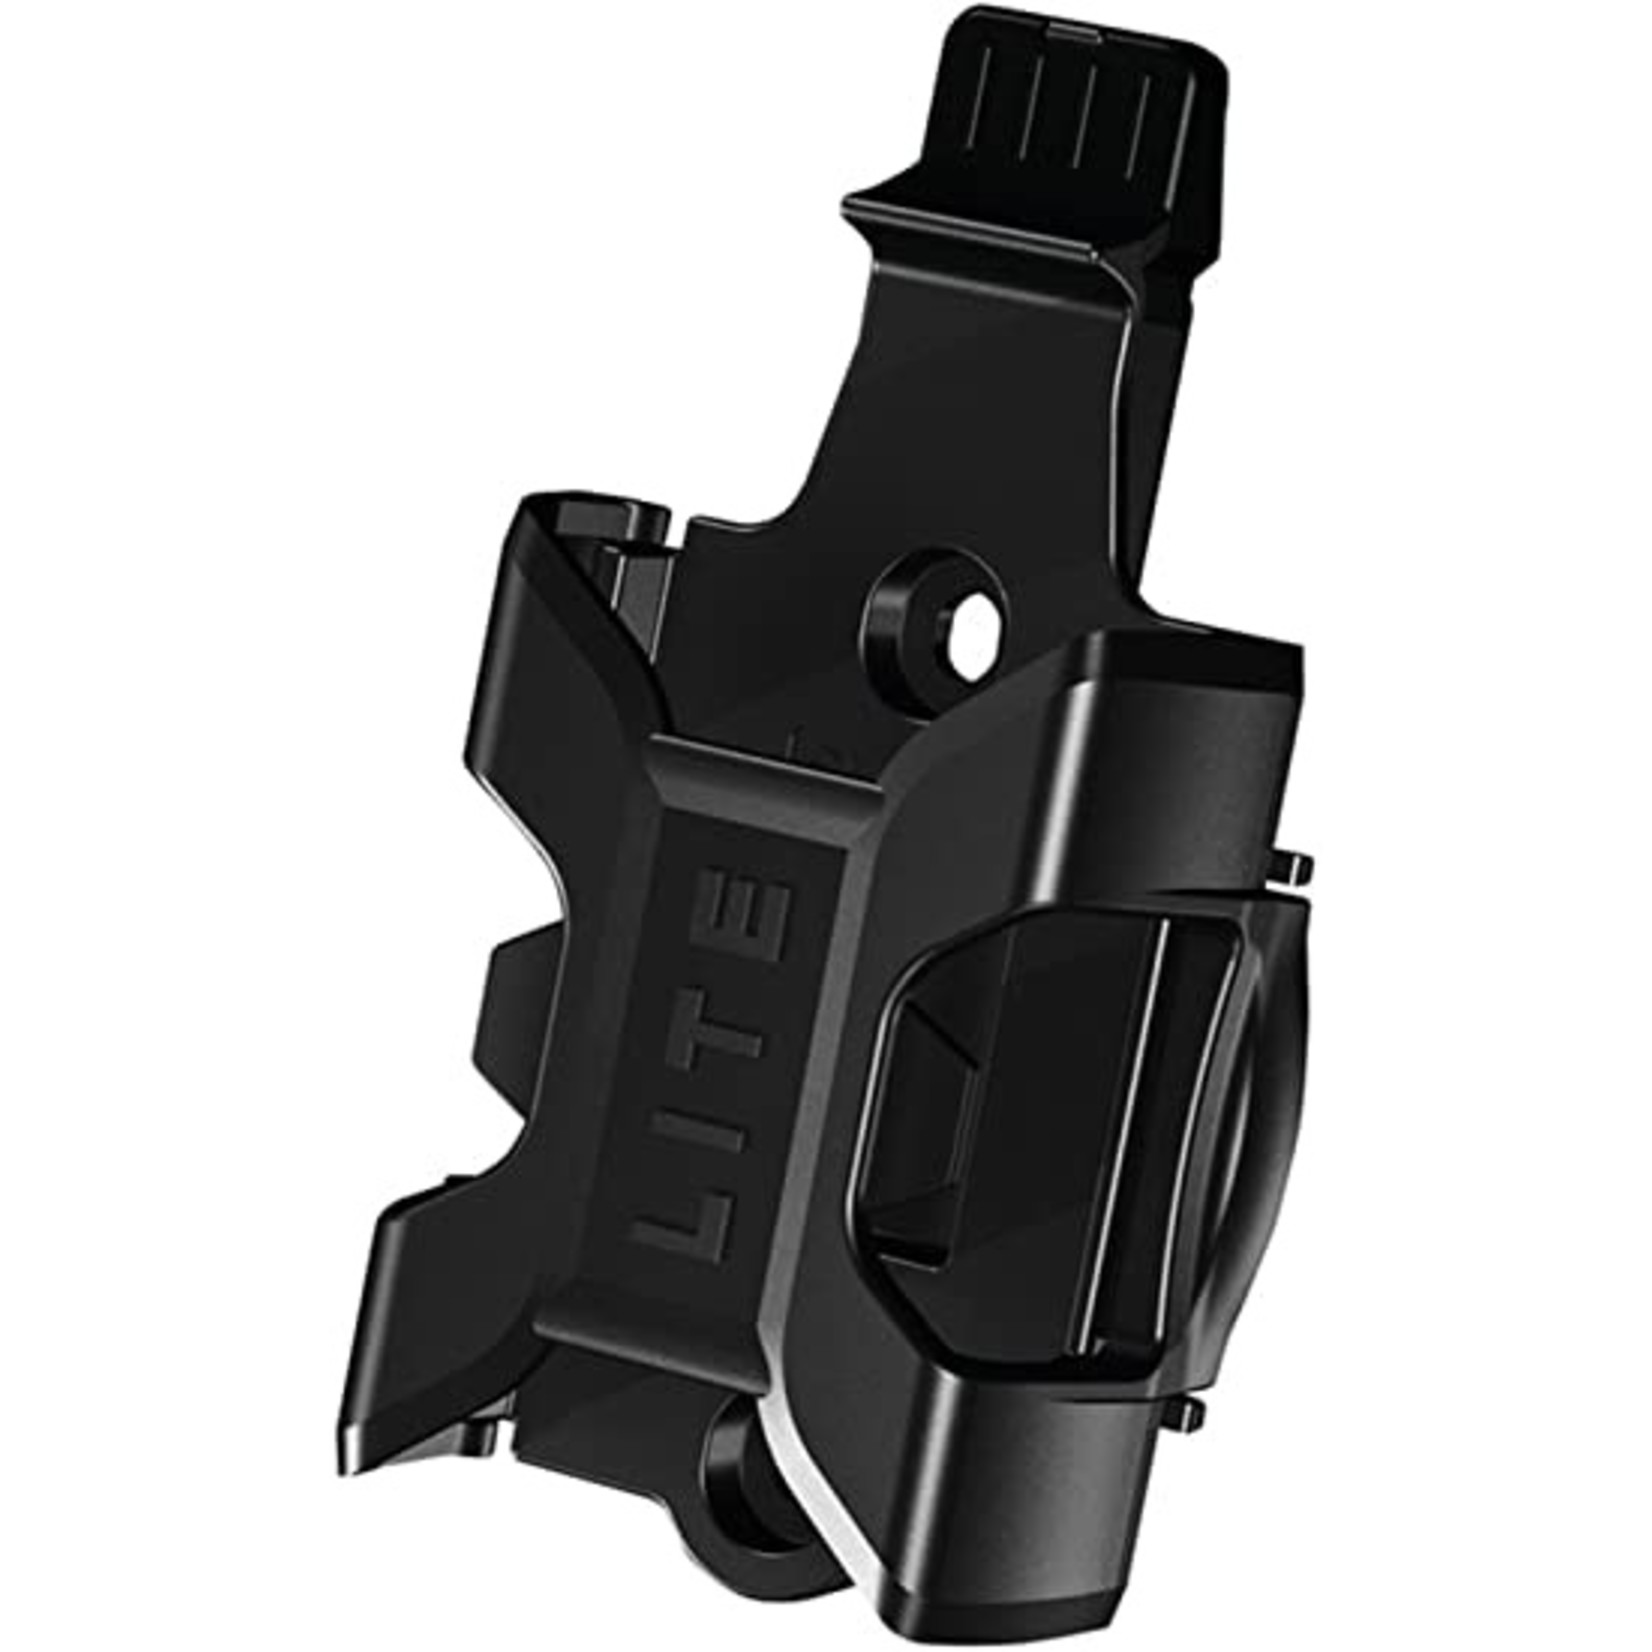 Folding Lock - Bordo uGrip Lite Mini 6055/85 Black